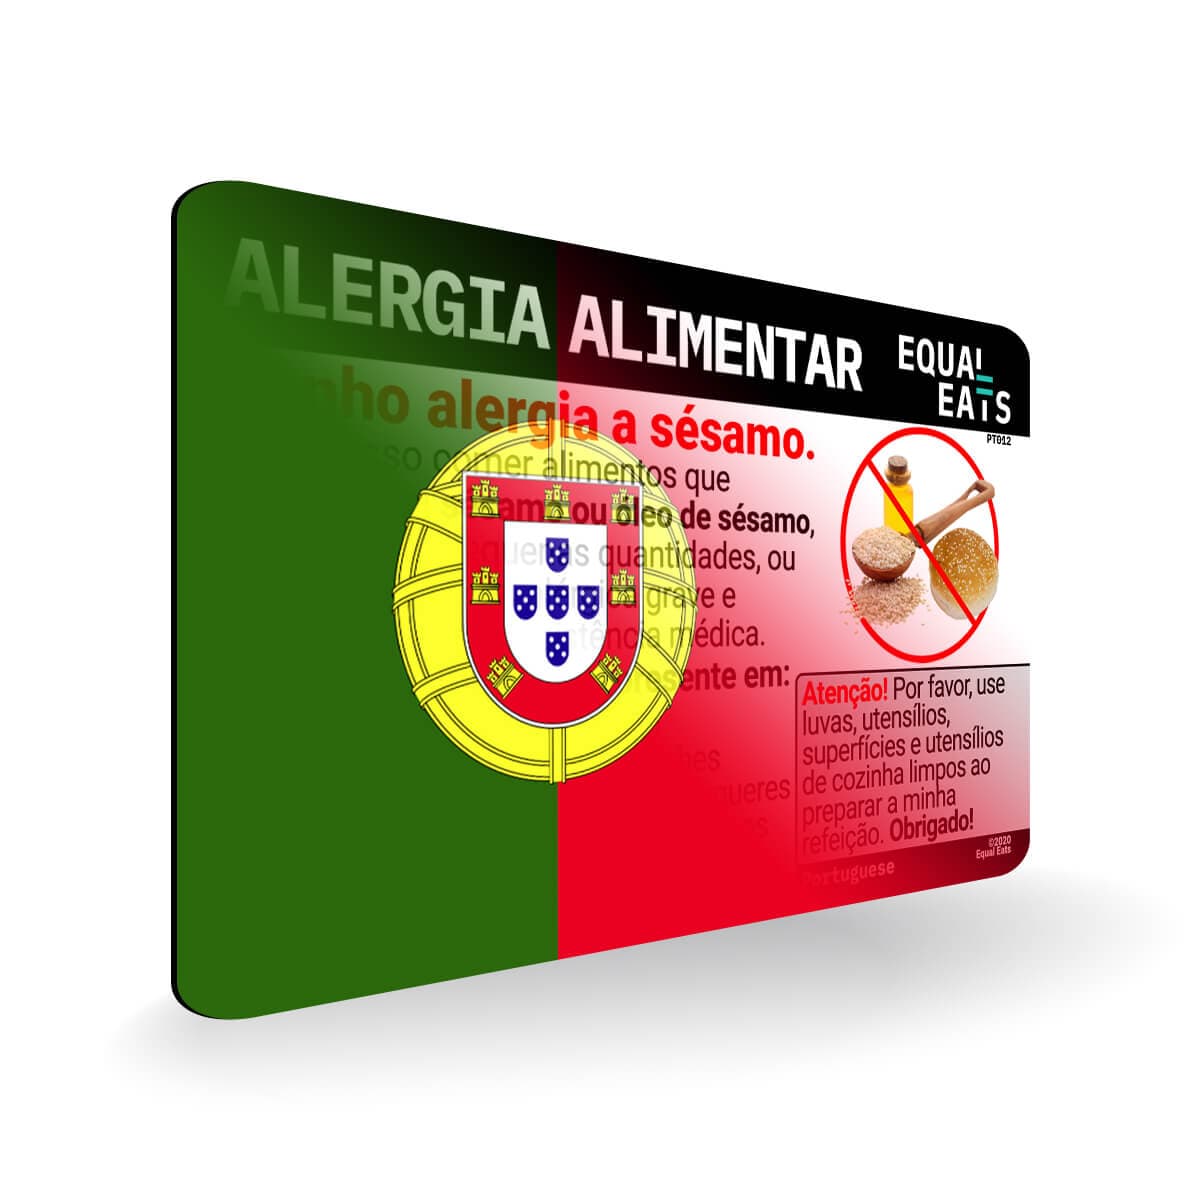 Sesame Allergy in Portuguese. Sesame Allergy Card for Portugal